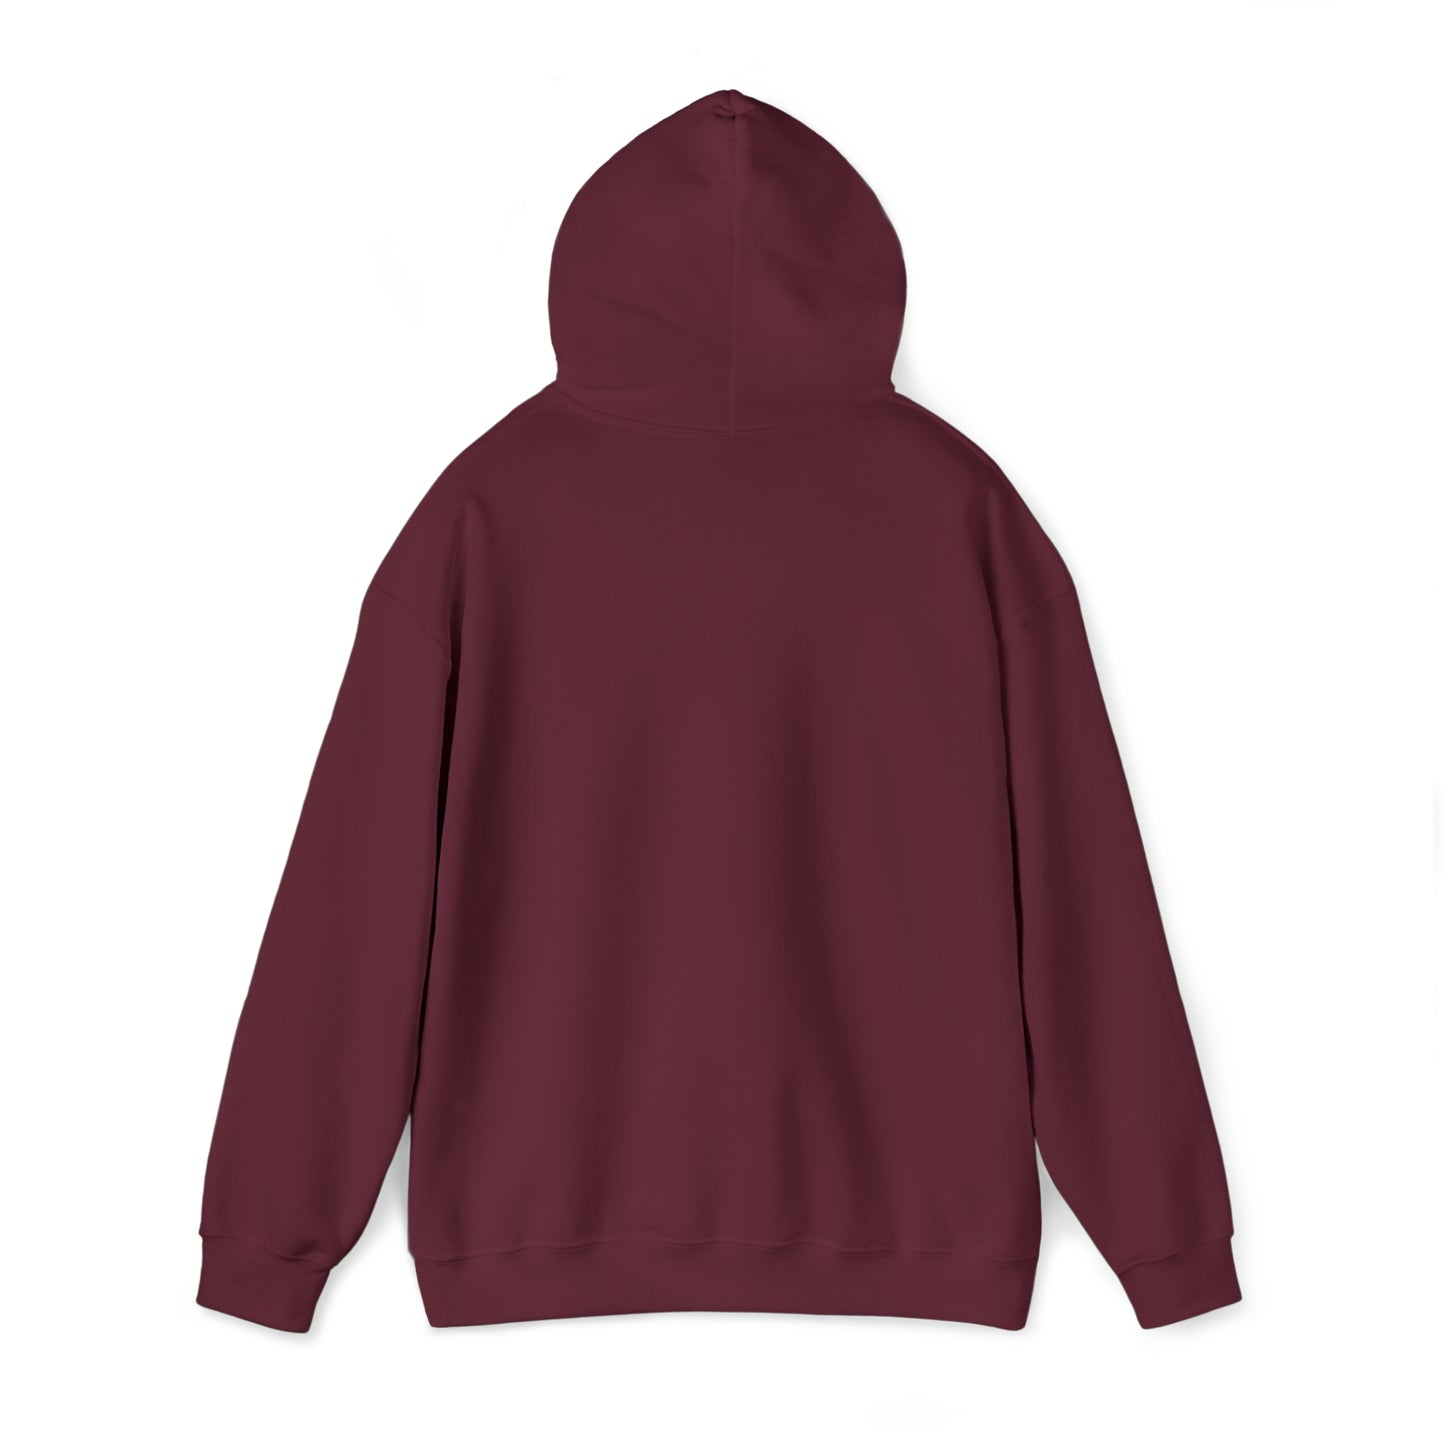 Pray Believe Repeat Unisex Heavy Blend™ Hooded Sweatshirt